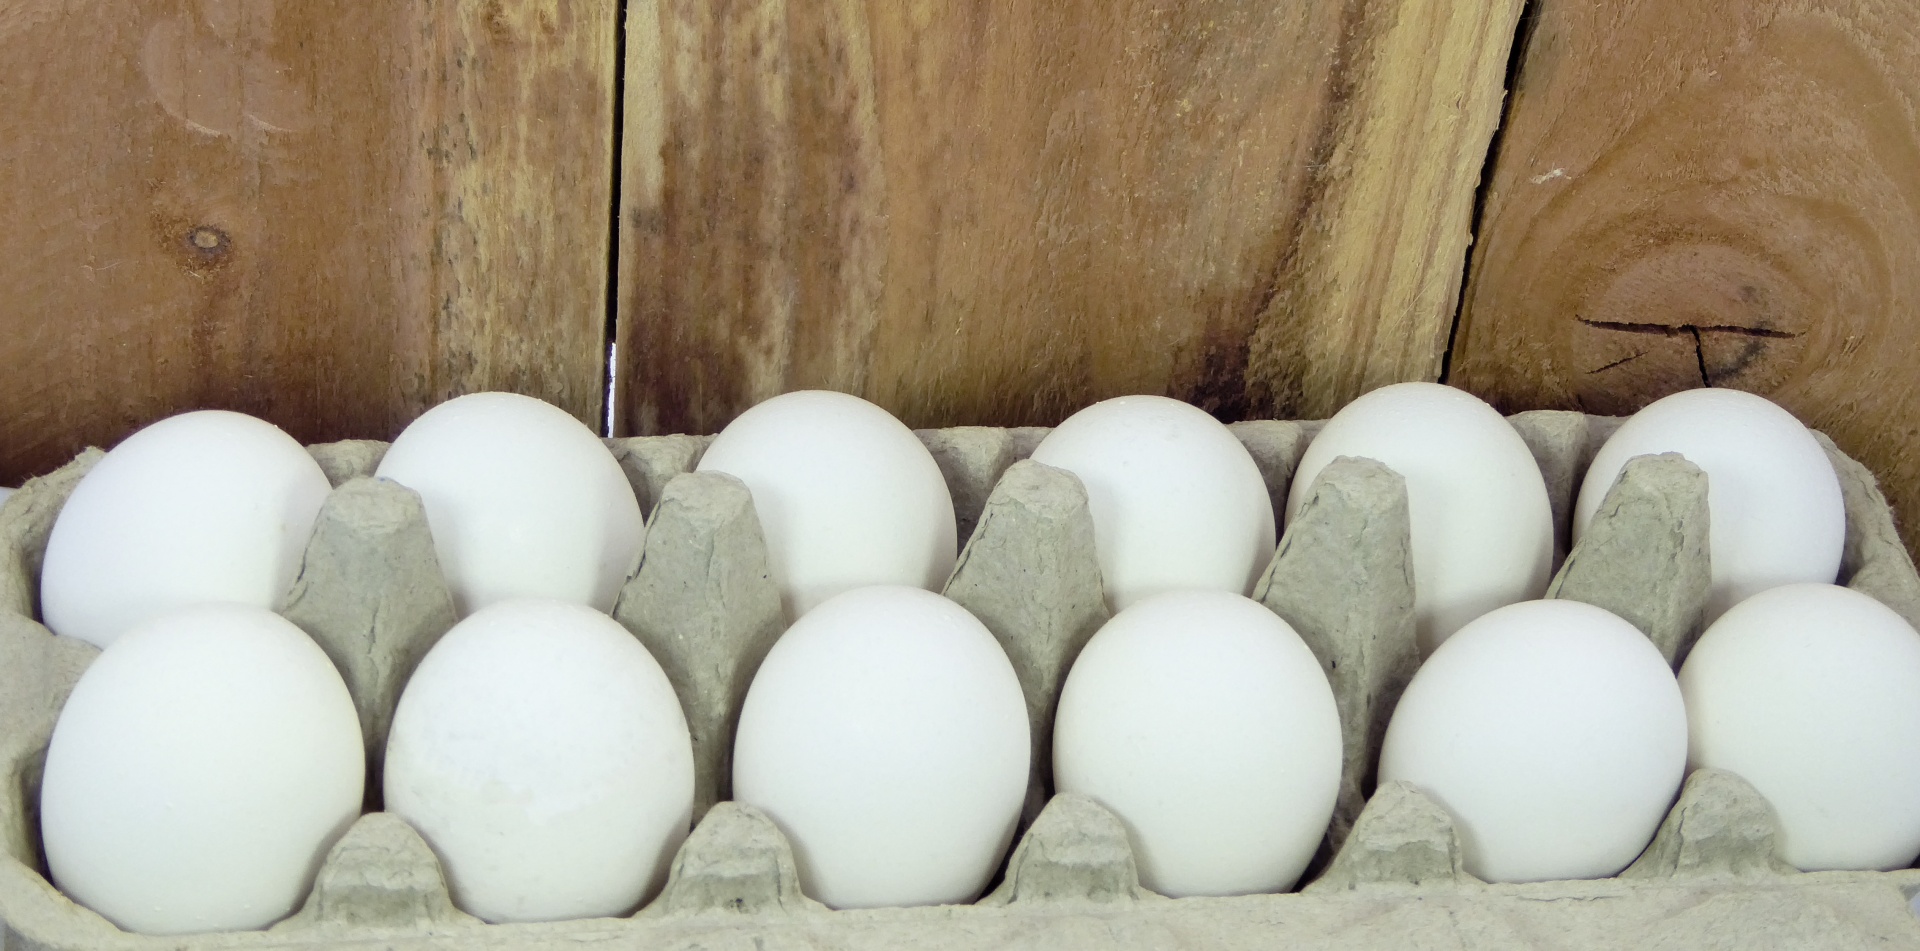 Dutzend Eier Und Holzzaun Kostenloses Stock Bild Public Domain Pictures